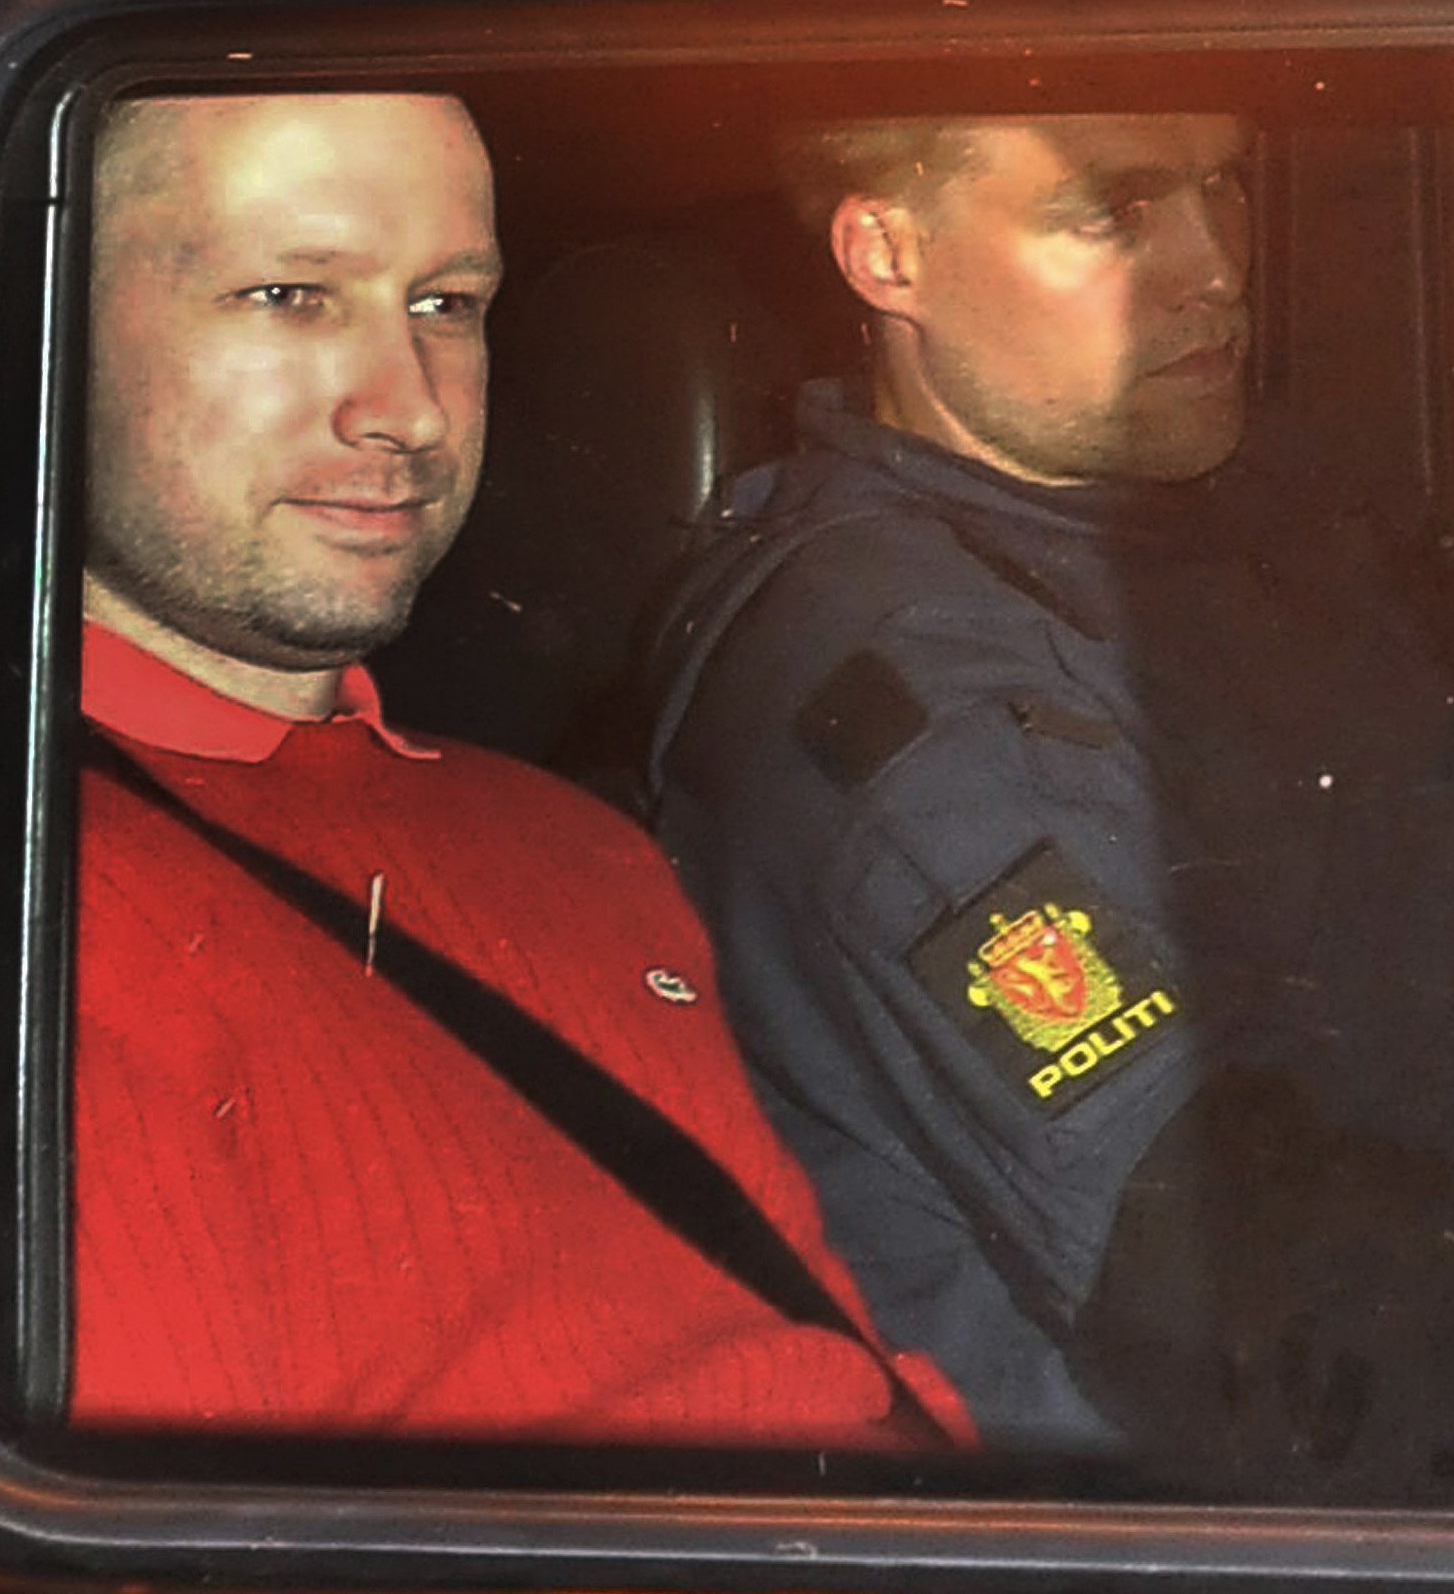 Bombattentat, Anders Behring Breivik, Häktningsförhandling, Utøya, Oslo, Norge, Terrordåd